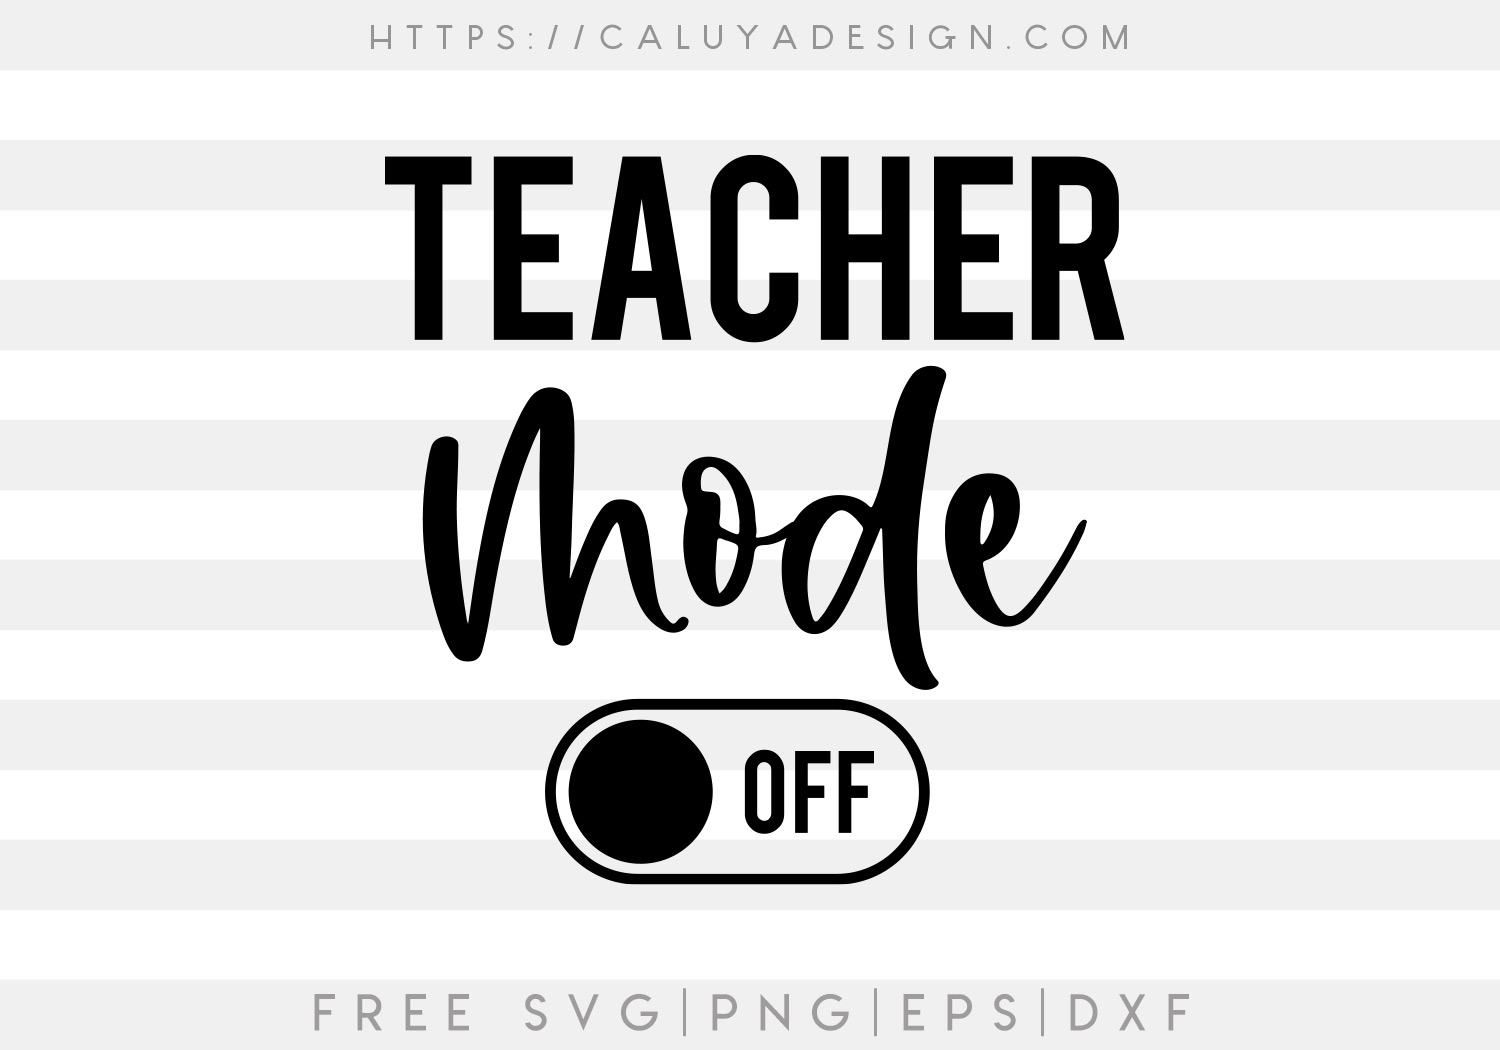 Free Teacher Mode Off SVG